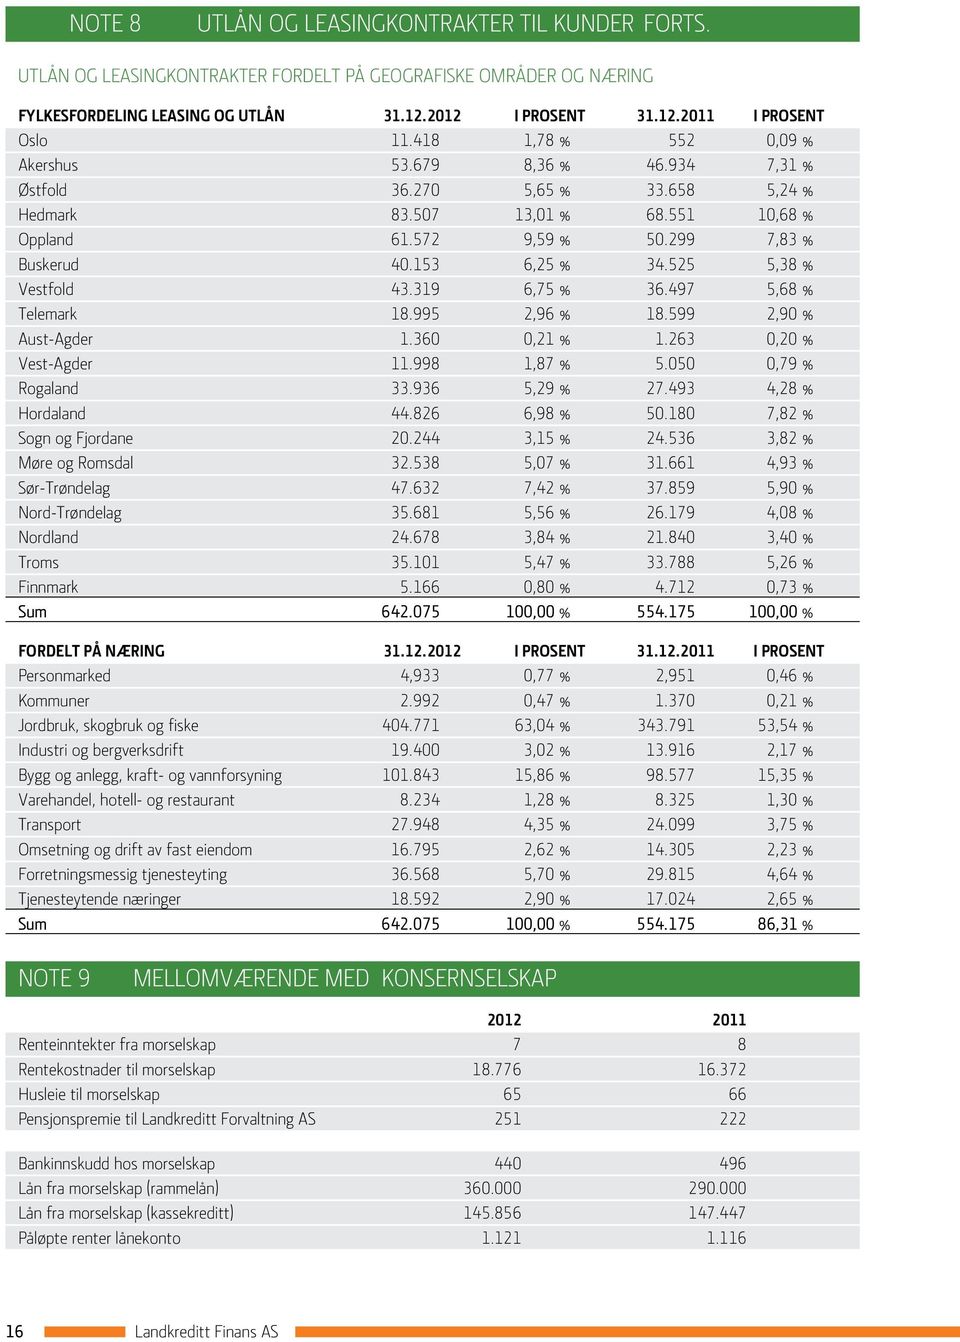 525 5,38 % Vestfold 43.319 6,75 % 36.497 5,68 % Telemark 18.995 2,96 % 18.599 2,90 % Aust-Agder 1.360 0,21 % 1.263 0,20 % Vest-Agder 11.998 1,87 % 5.050 0,79 % Rogaland 33.936 5,29 % 27.